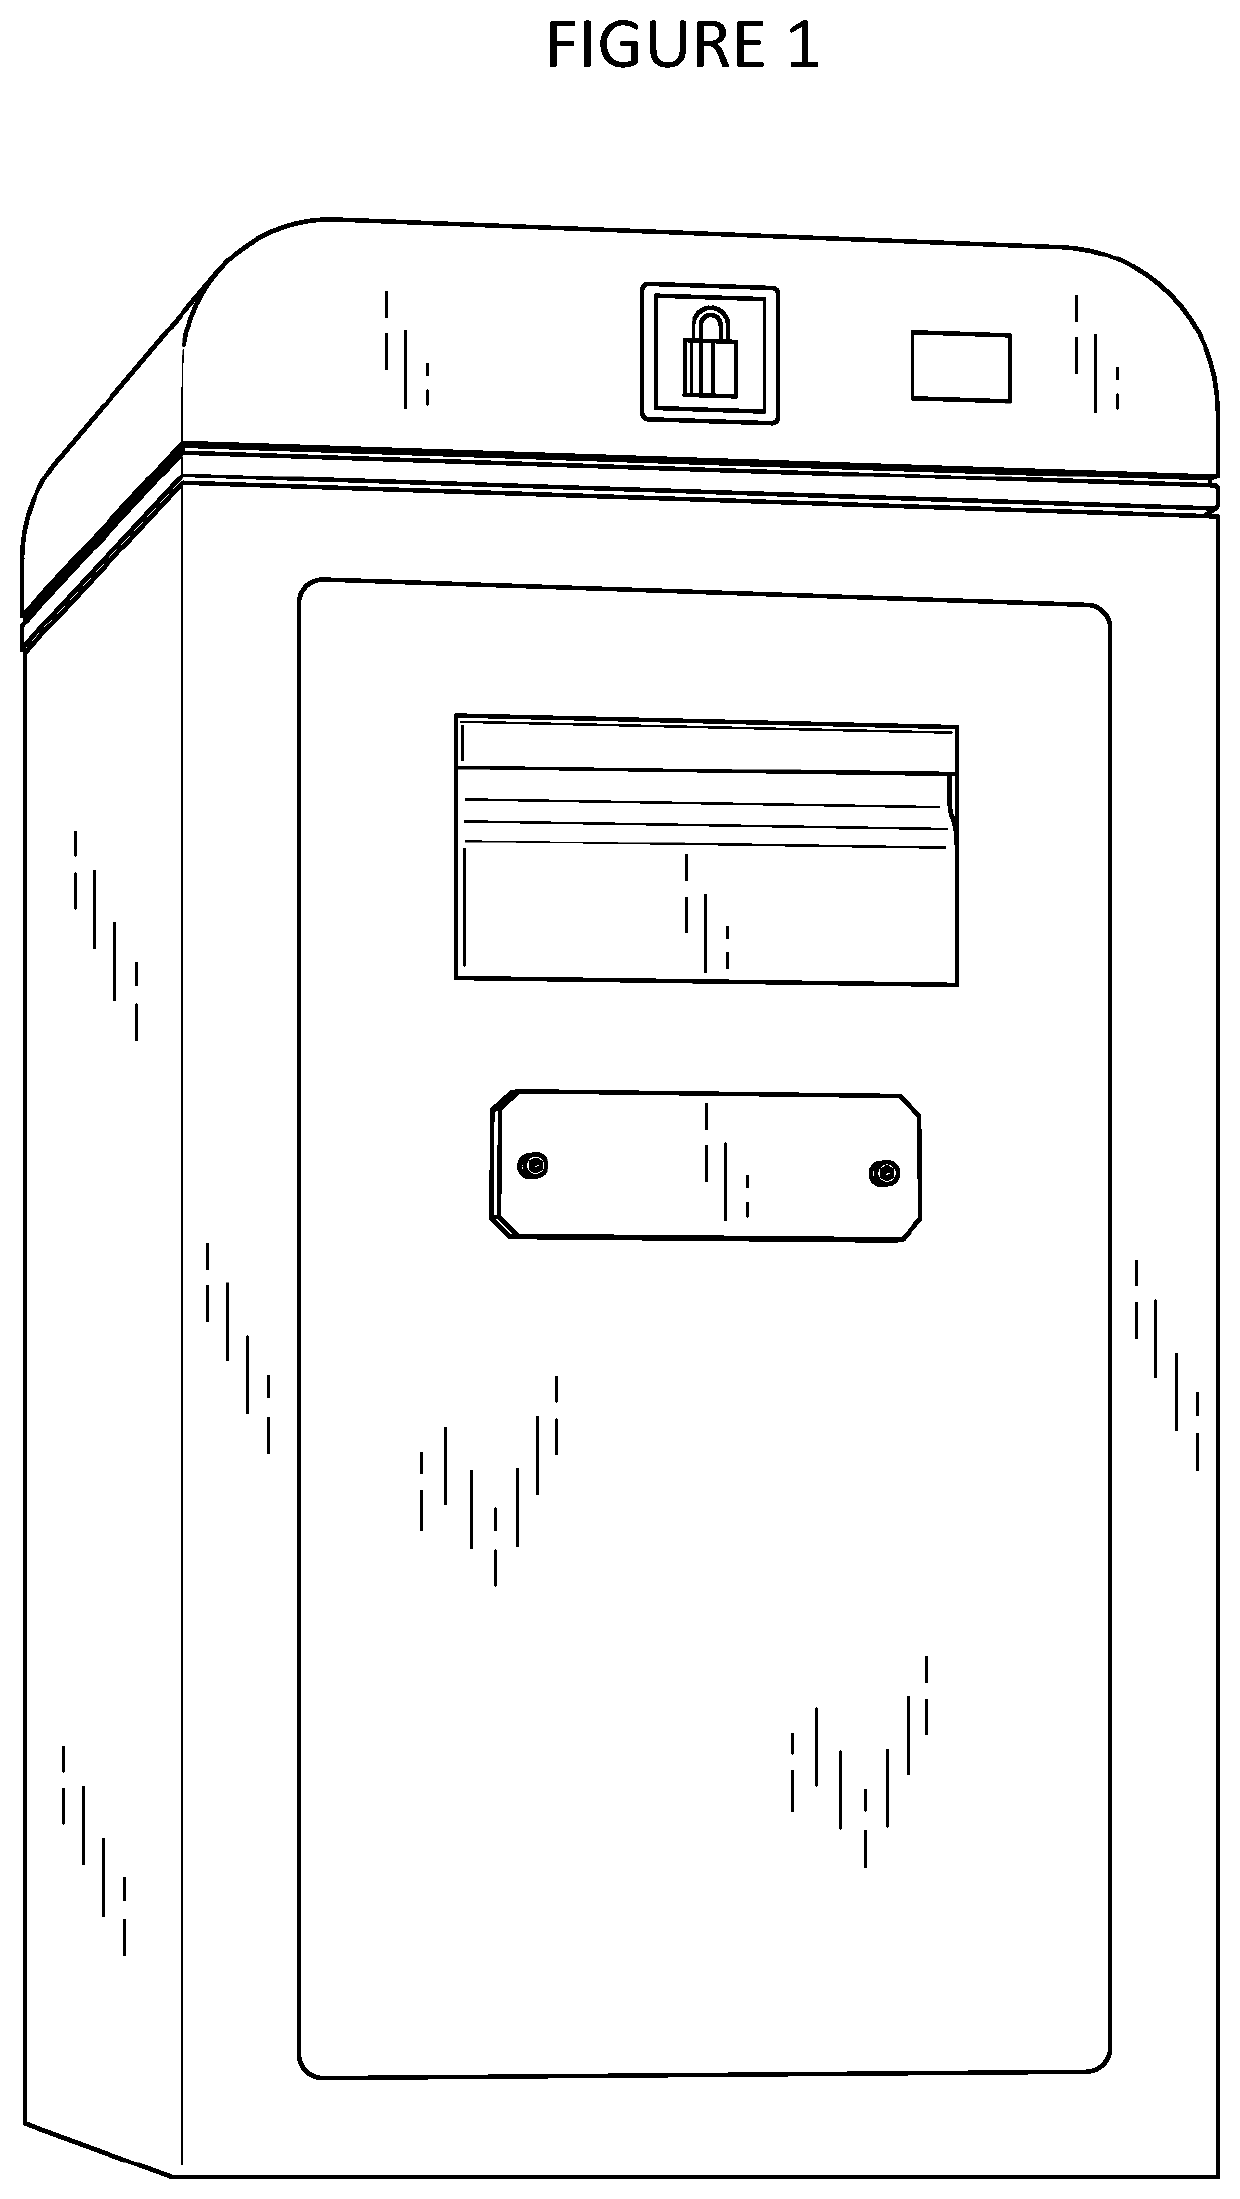 Self-service modular drop safes